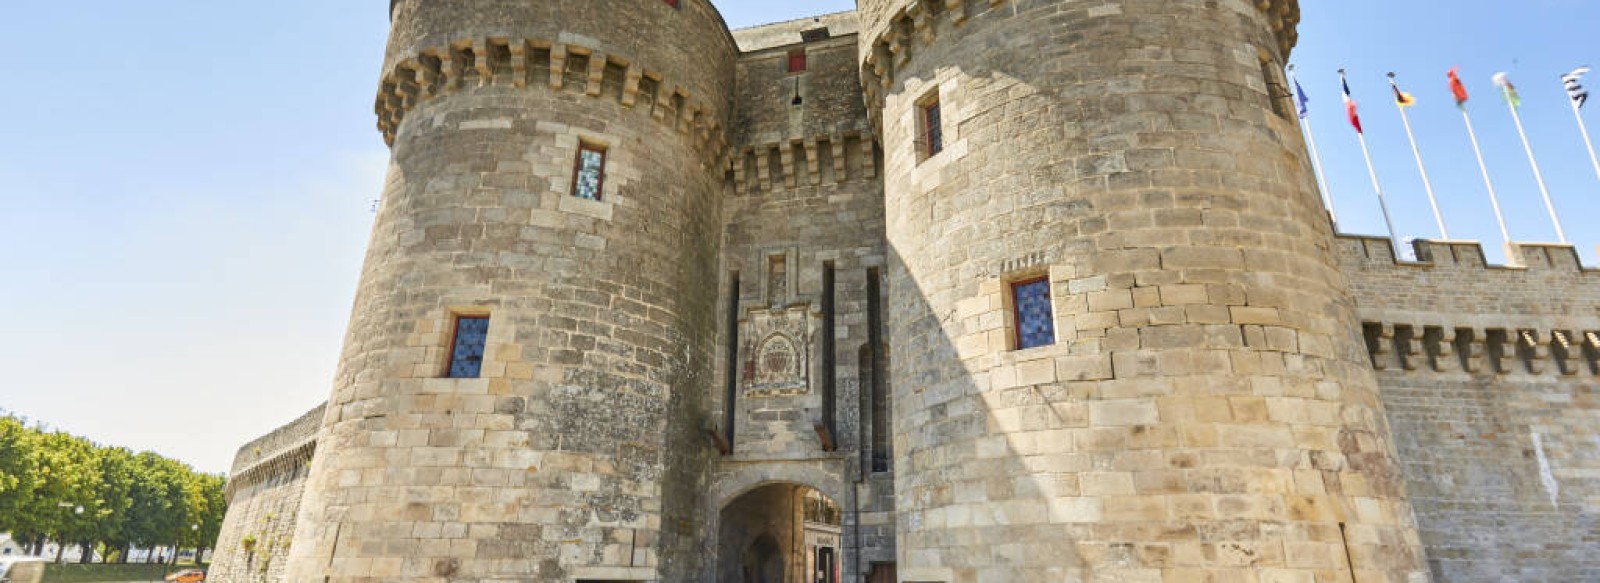 Porte Saint-Michel - Chateau-Musee de Guerande